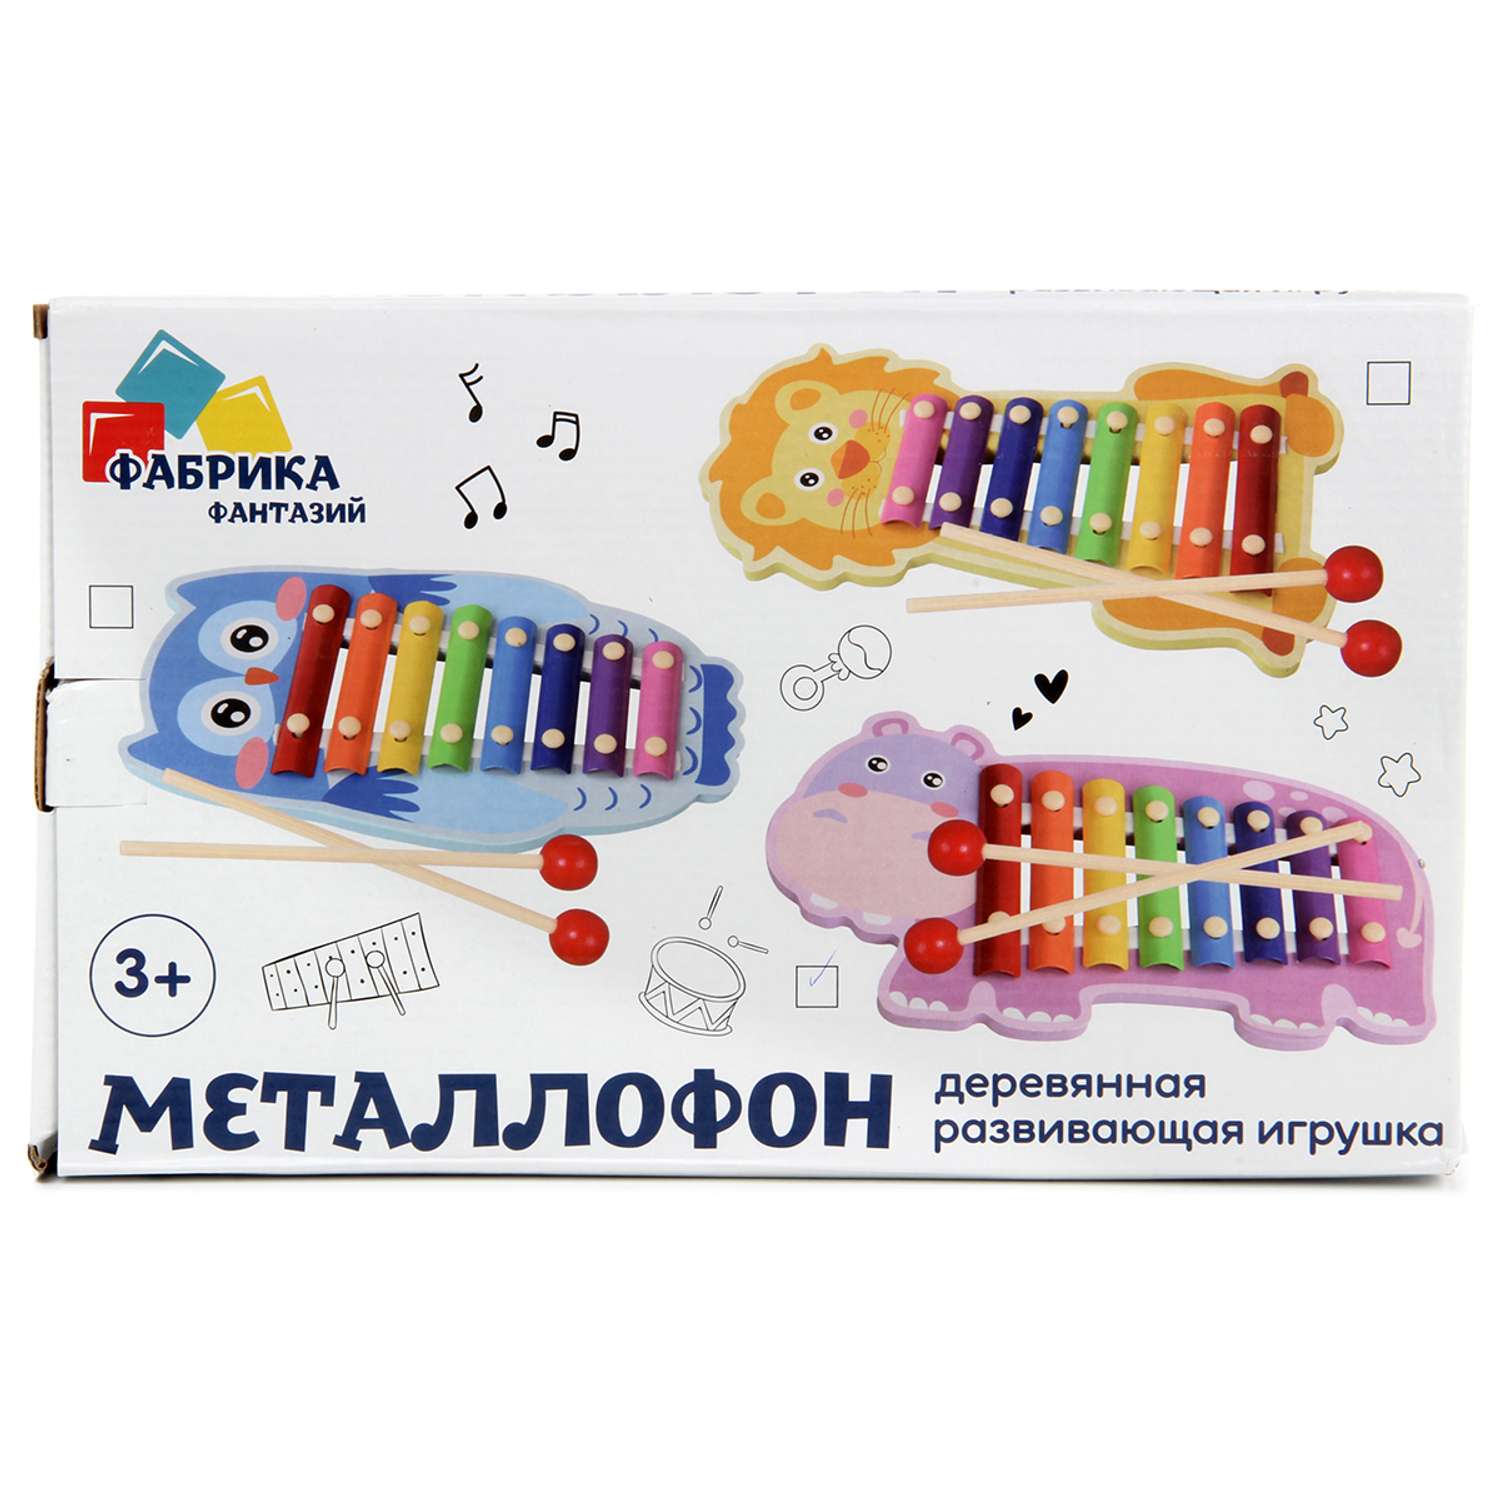 Музыкальная игрушка Фабрика Фантазий металлофон бегемот - фото 5